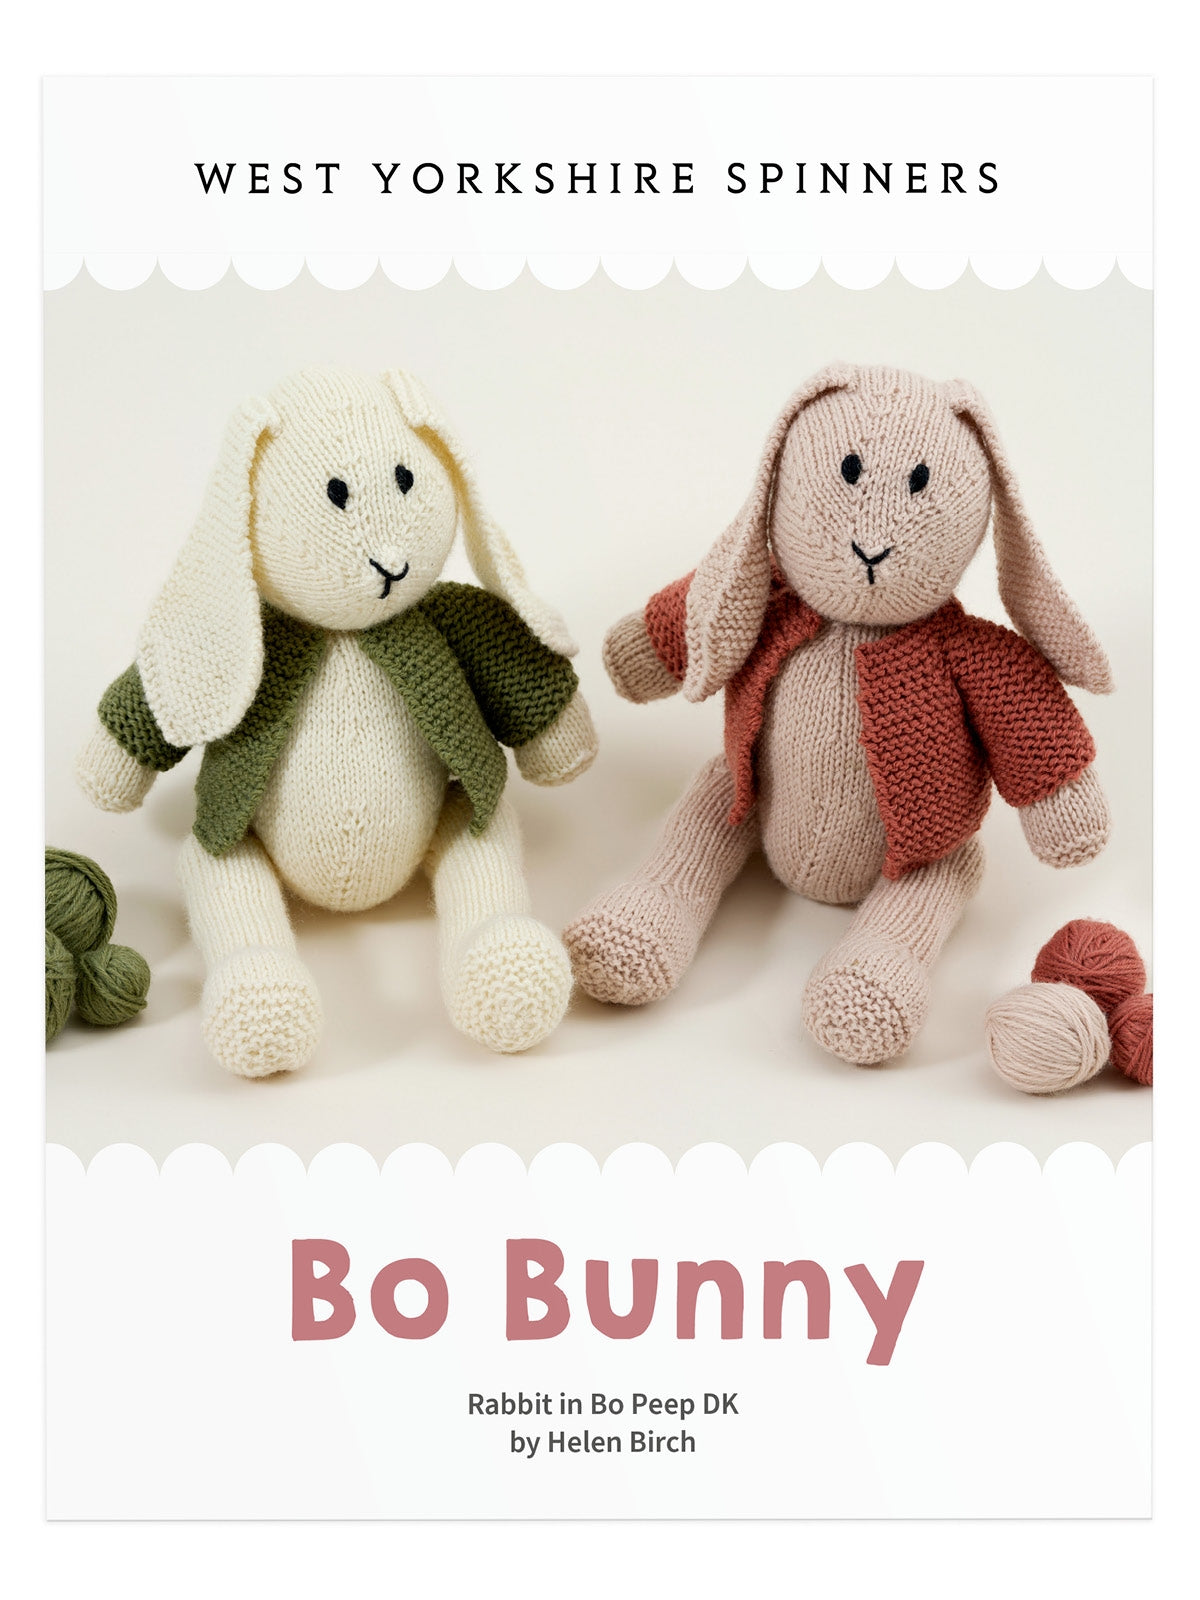 WYS Bo Bunny: Rabbit in Bo Peep DK by Helen Birch